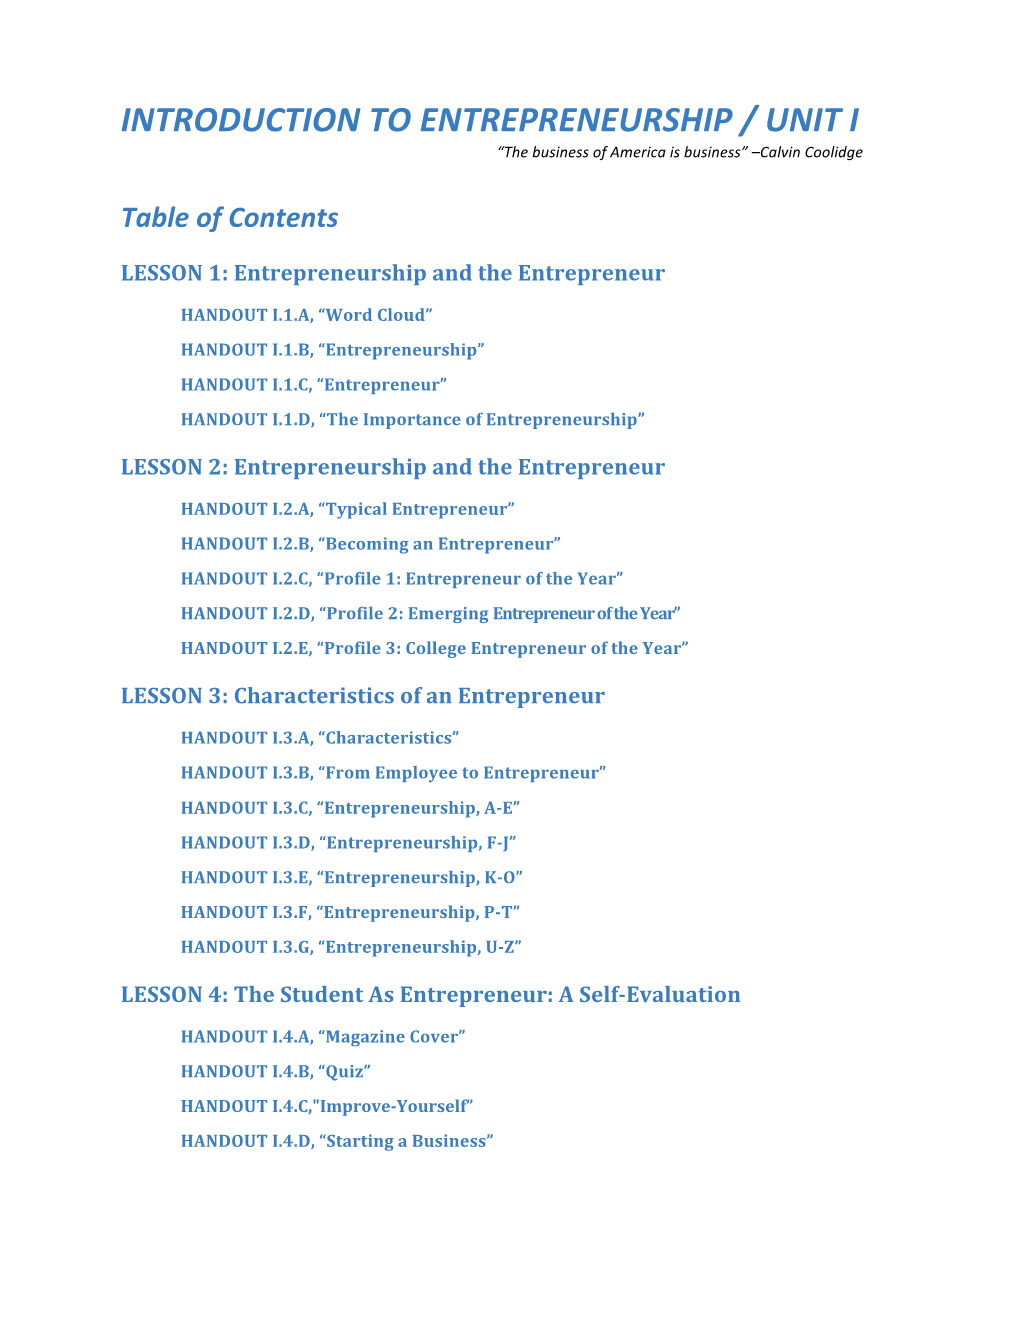 Unit 1- Intro to Entrepreneurship